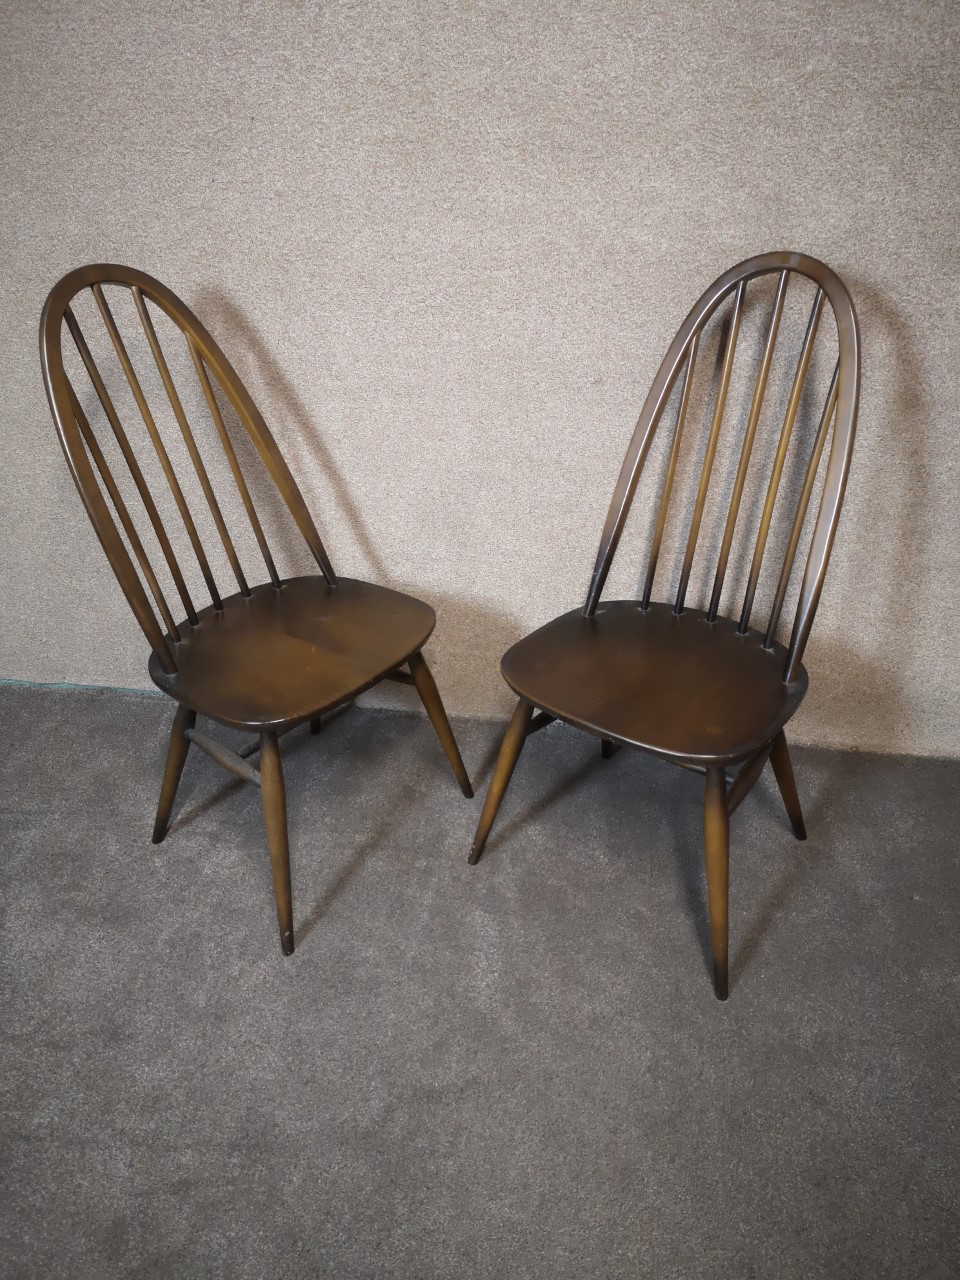 2 Ercol chairs (quaker_Dark)画像